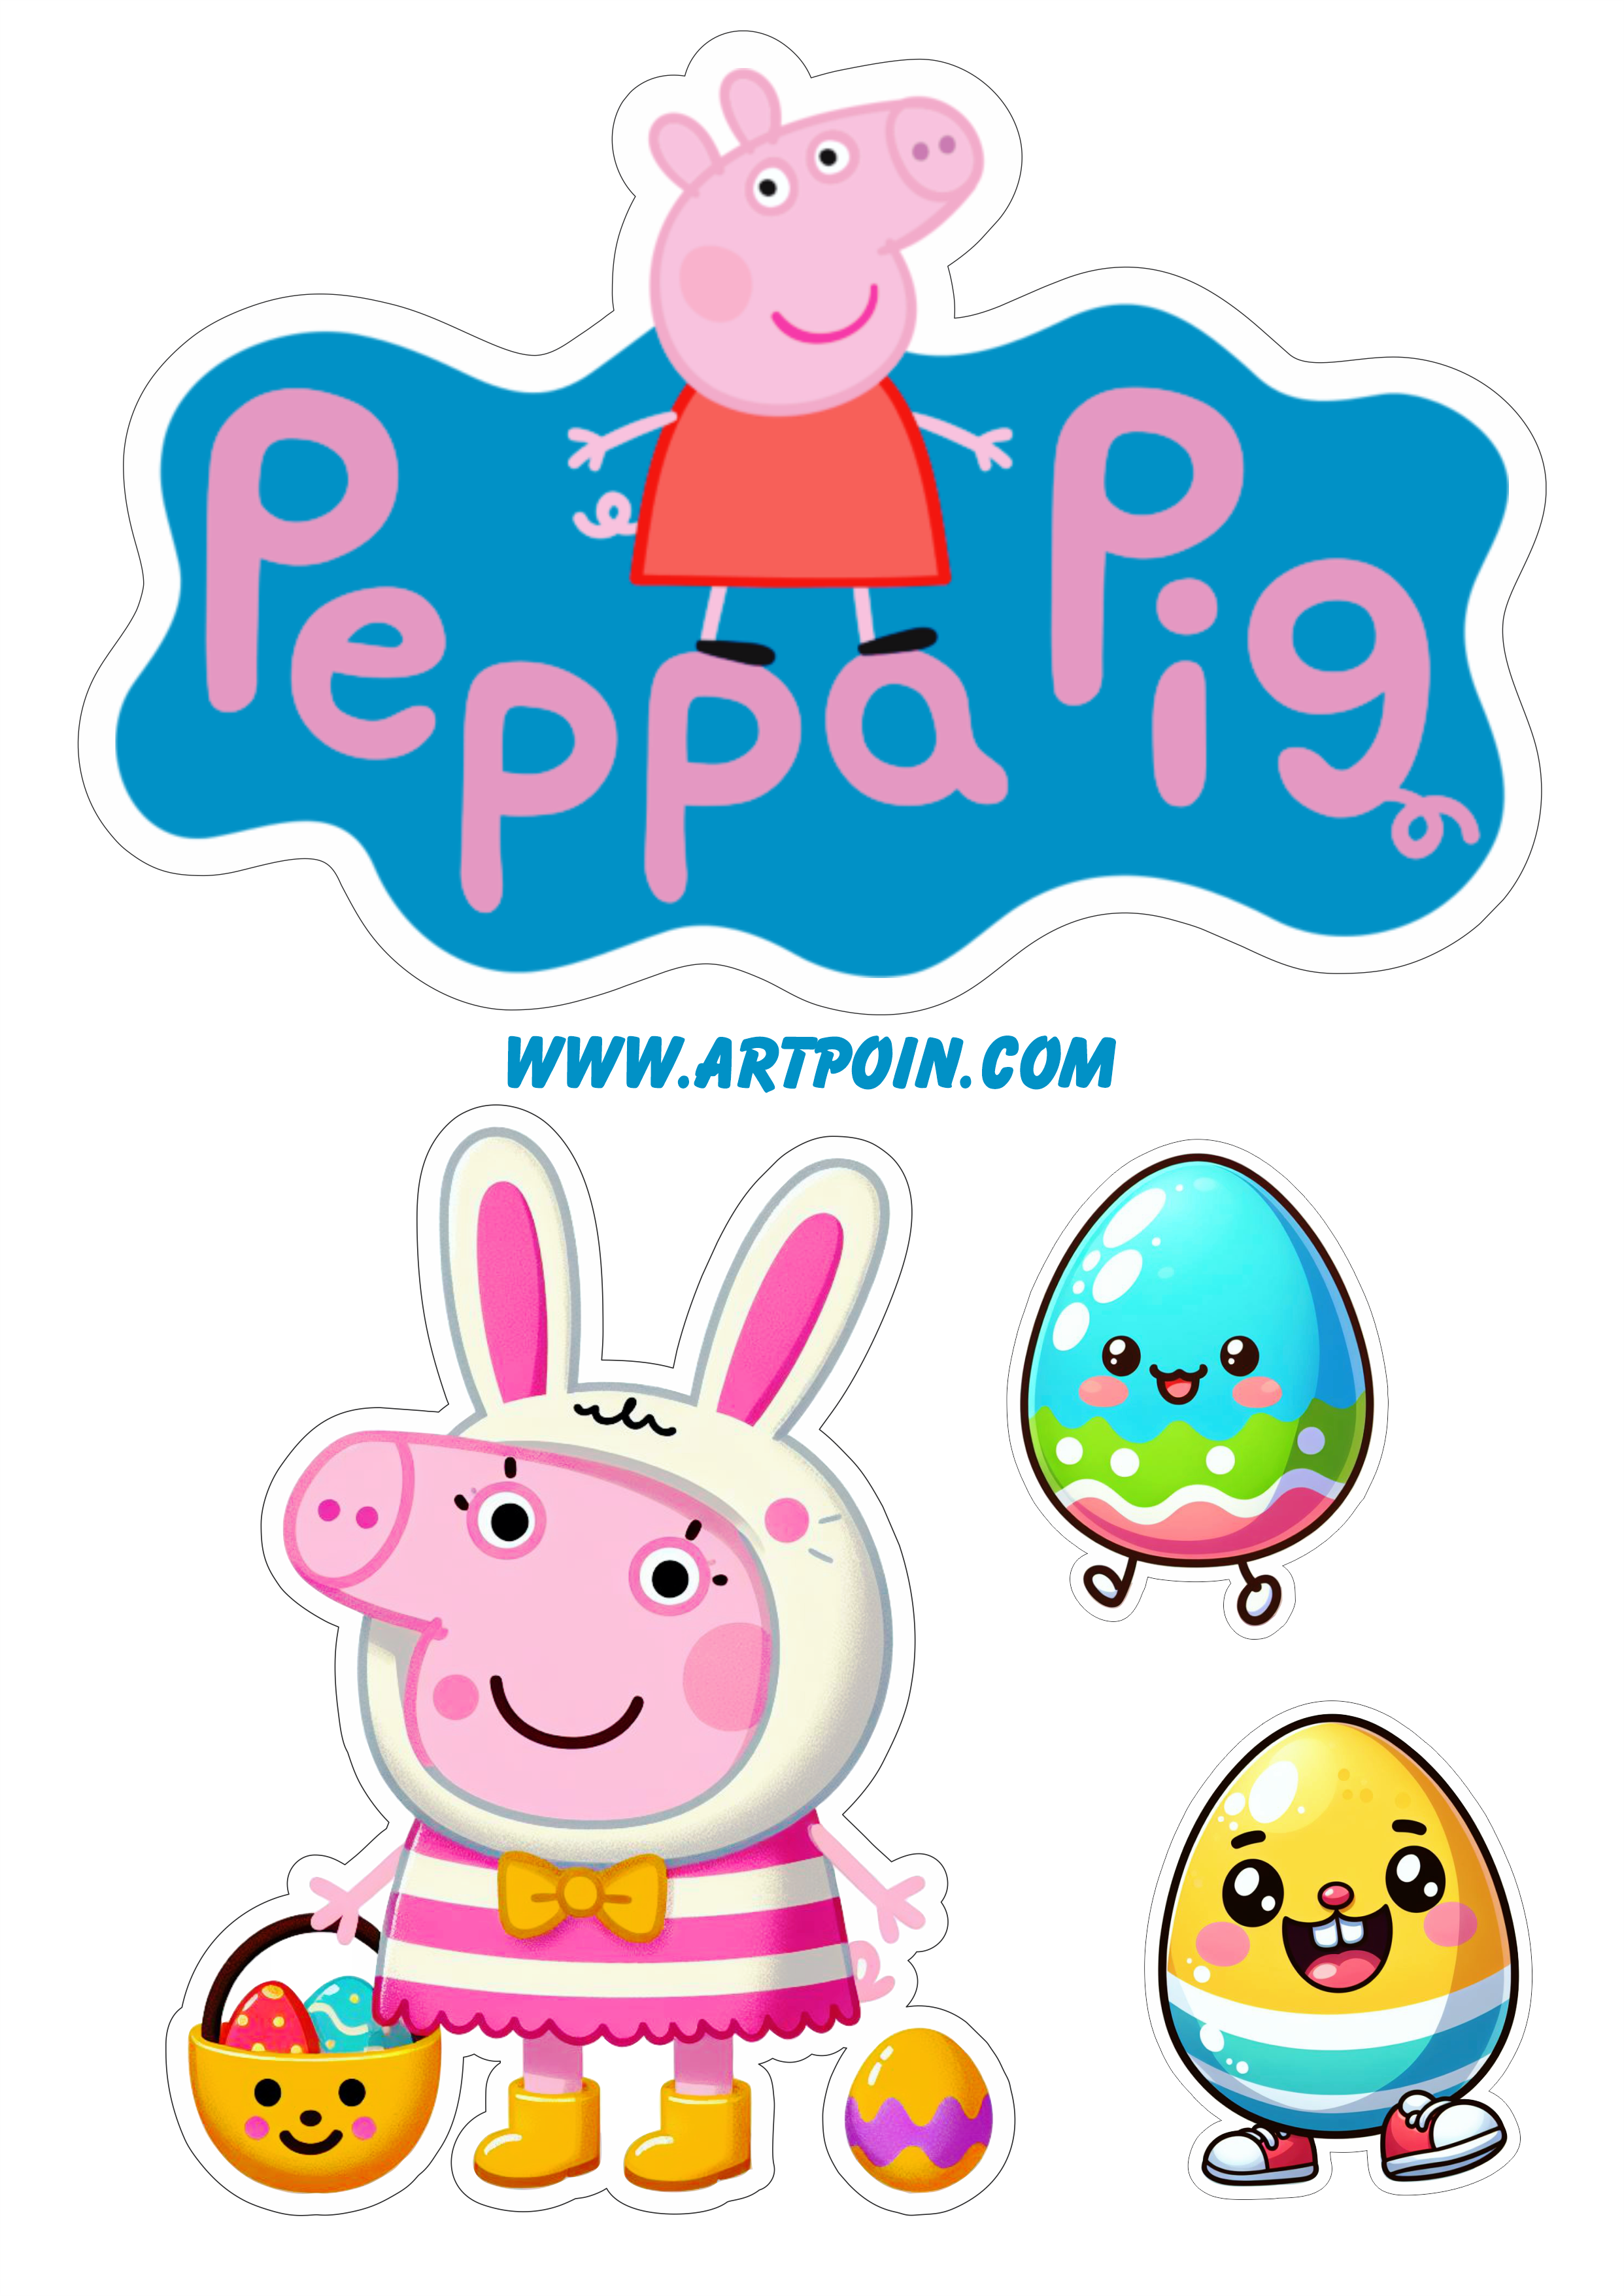 Peppa Pig topo de bolo páscoa desenho infantil decoração ovos de chocolate festa decorada png